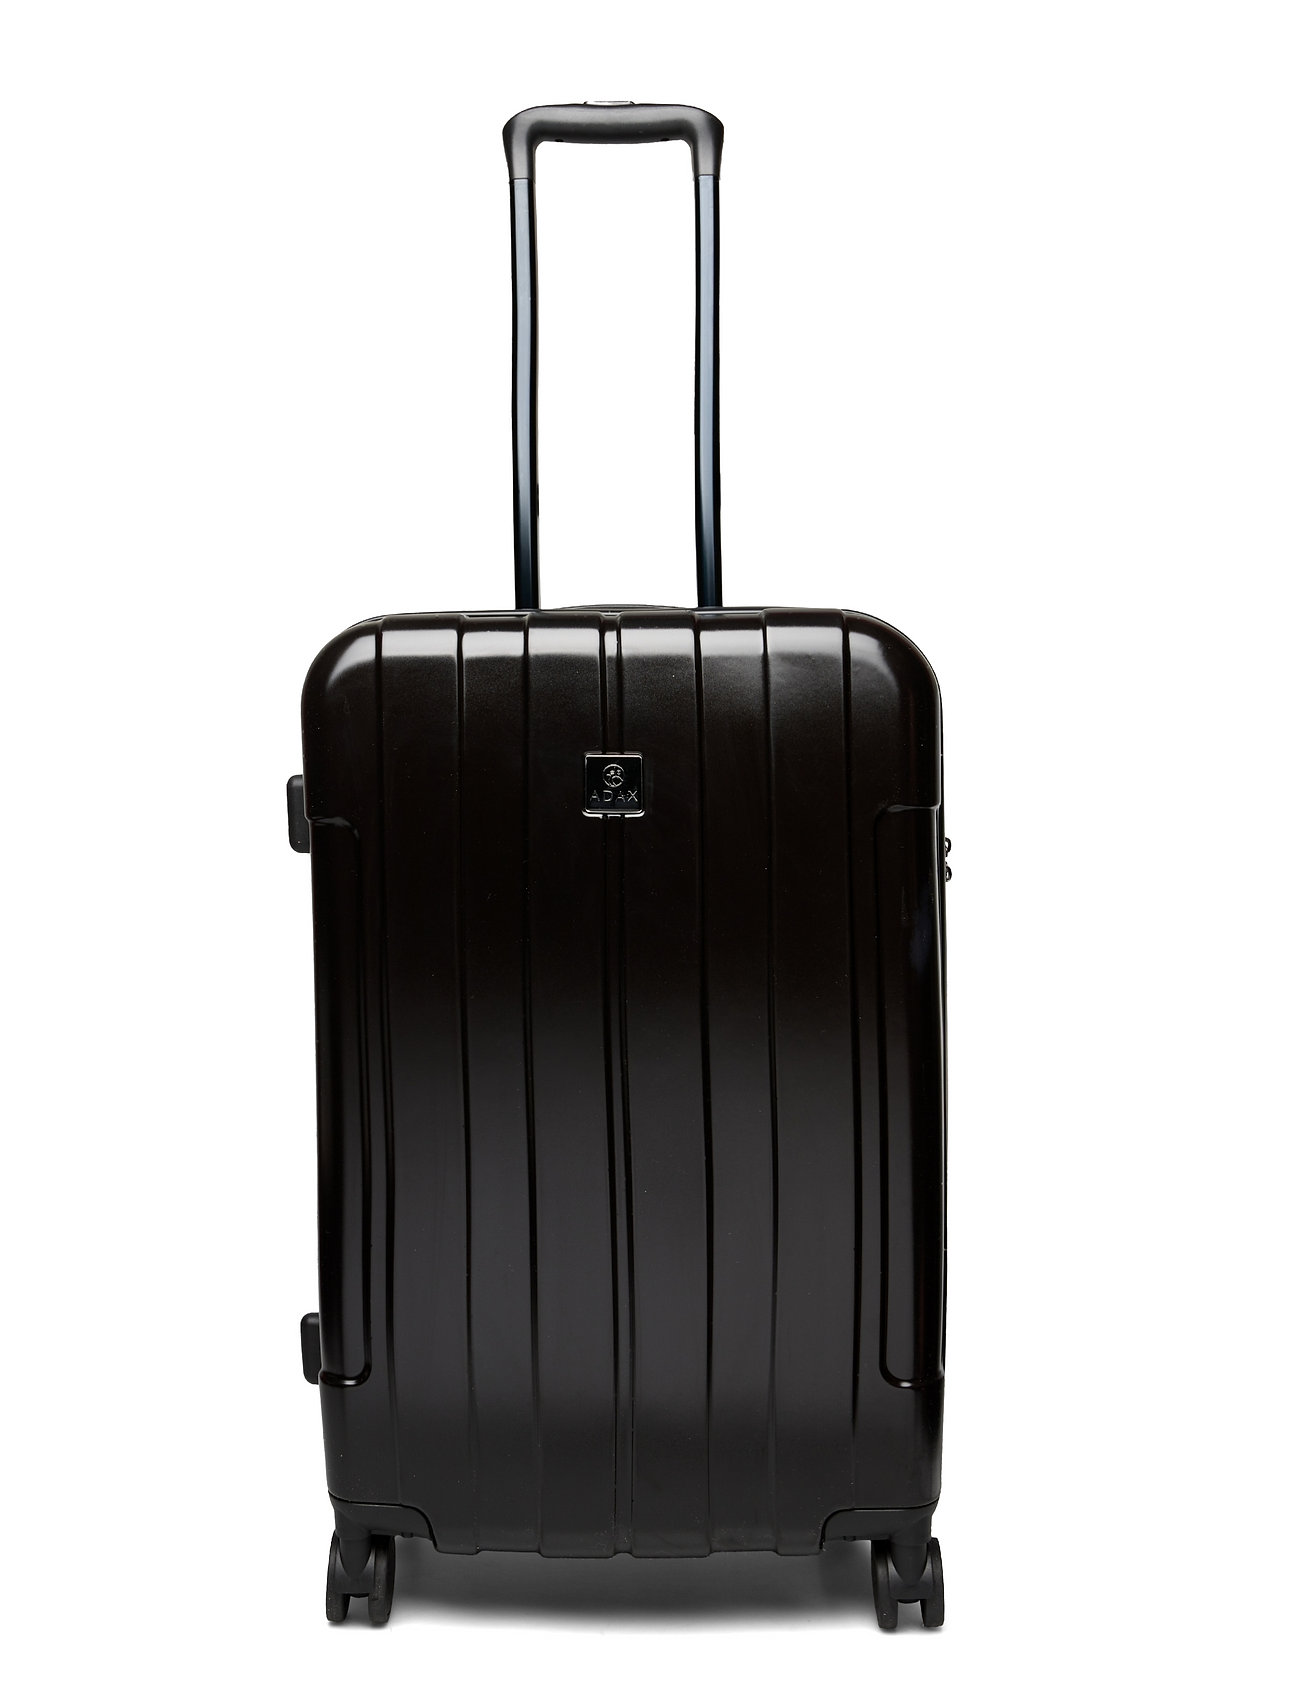 Adax Hardcase 67Cm Miley Bags Suitcases Black Adax